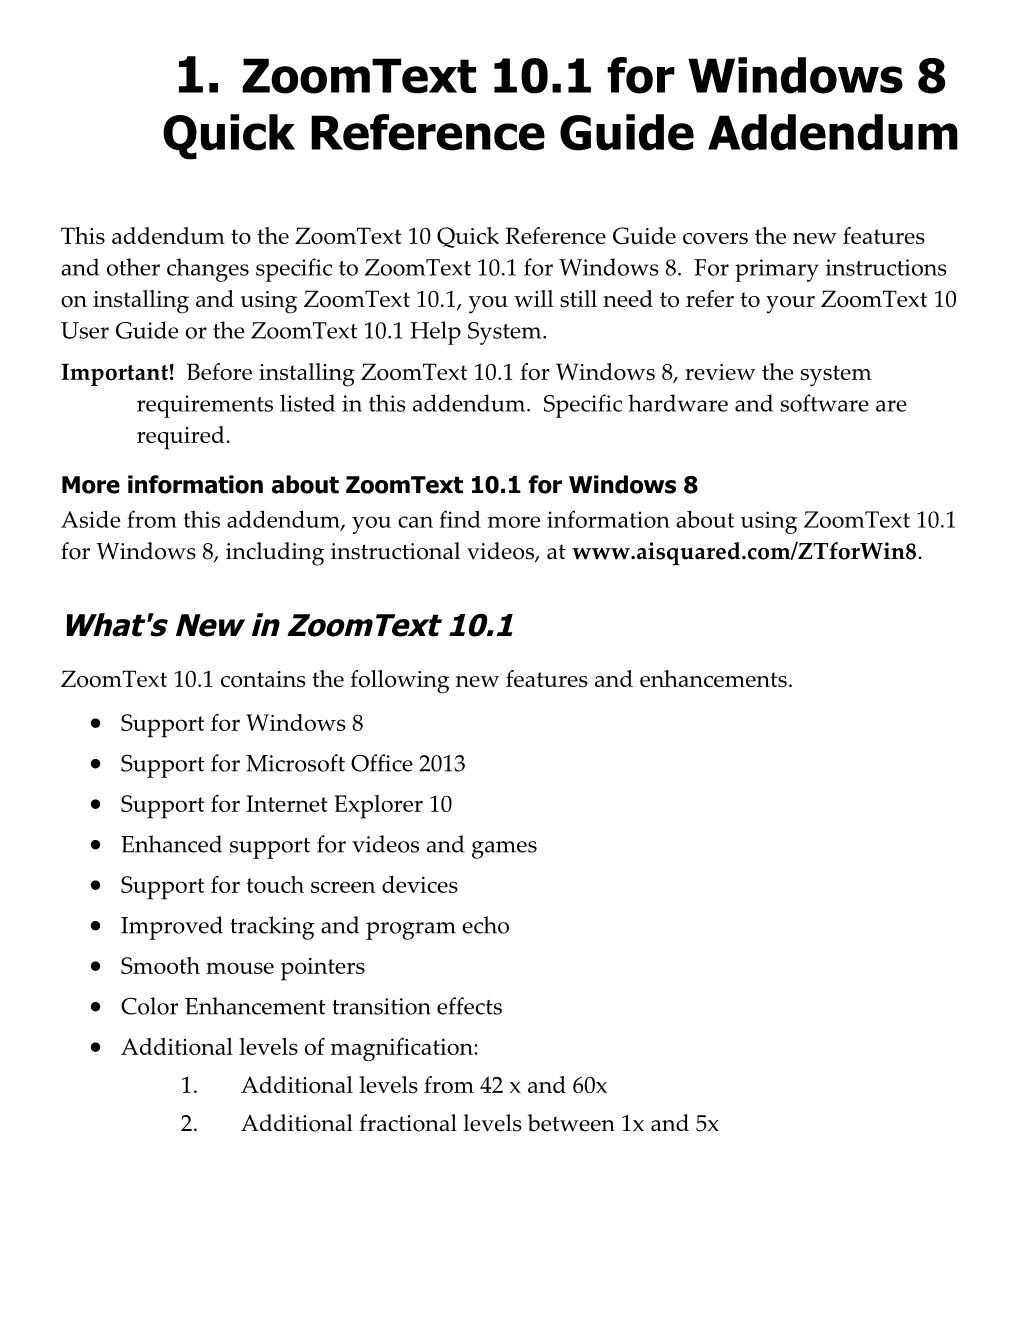 Zoomtext for Windows 8 User Guide Addendum